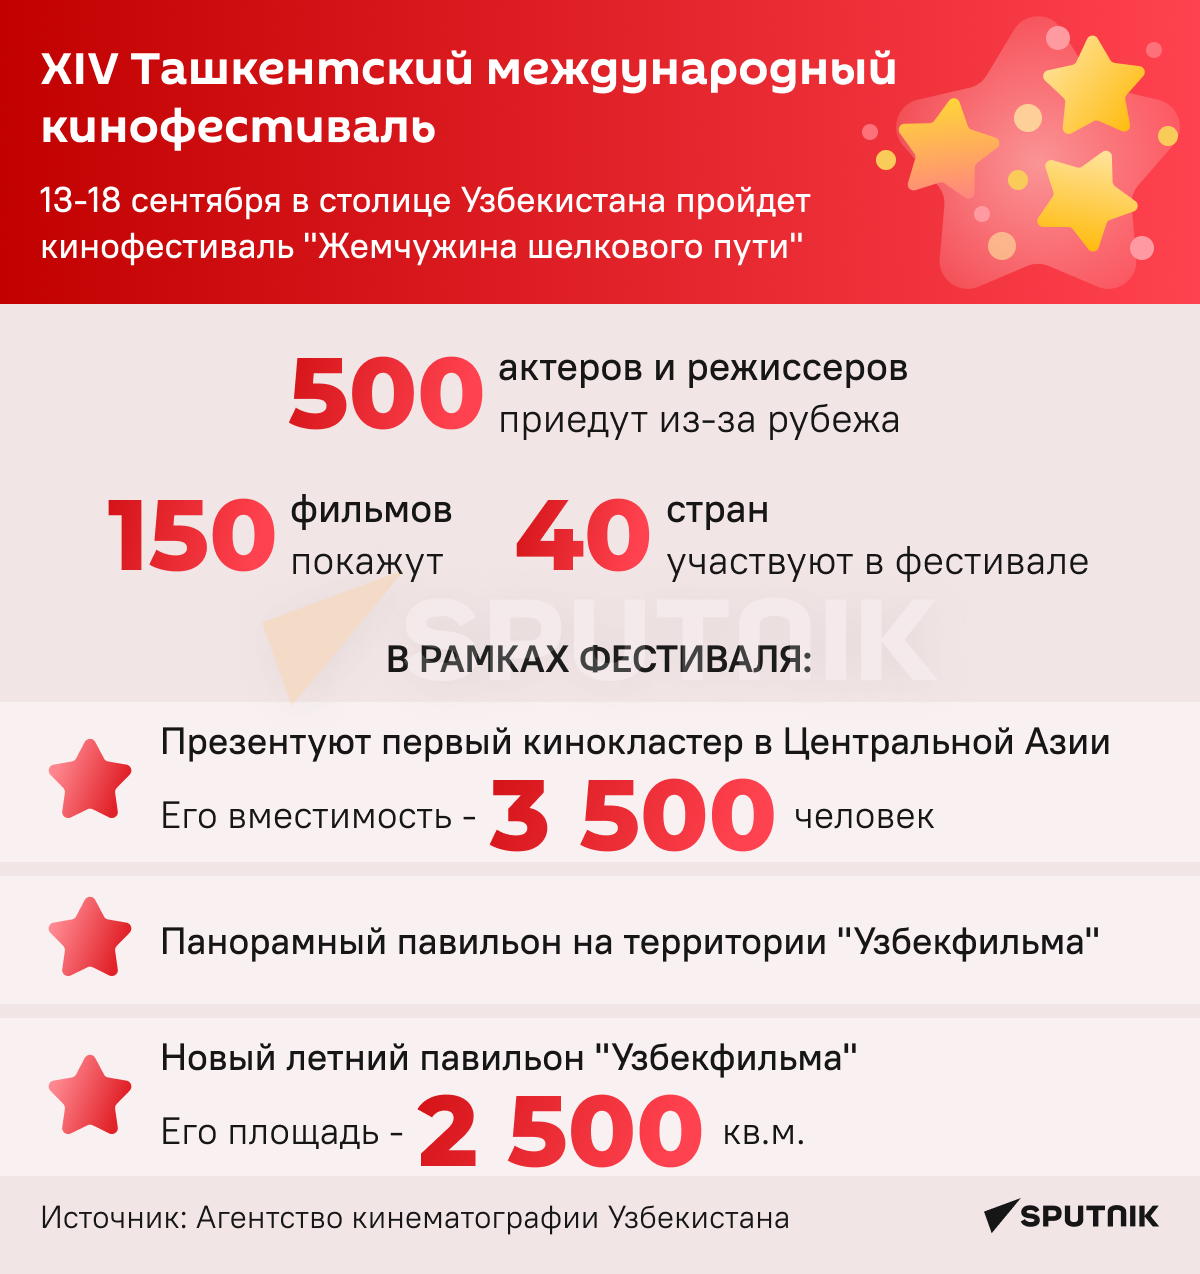 XIV Ташкентский международный кинофестиваль инфографика - Sputnik Узбекистан